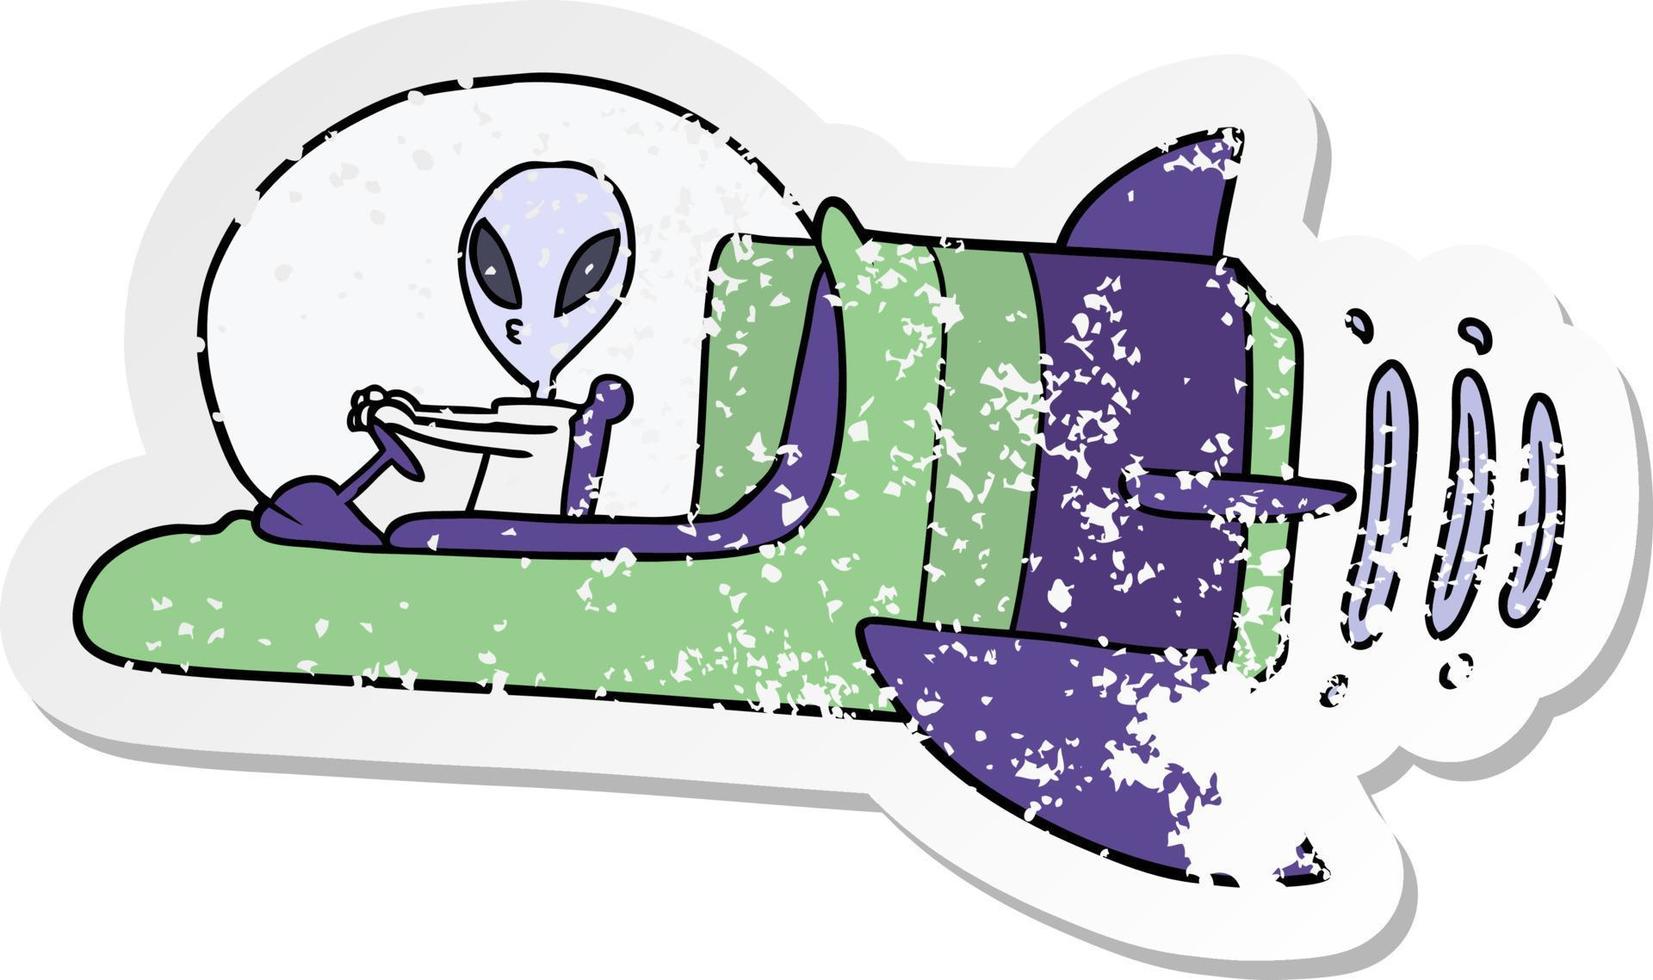 Mão desenhada ilustração alienígena dos desenhos animados com adesivo